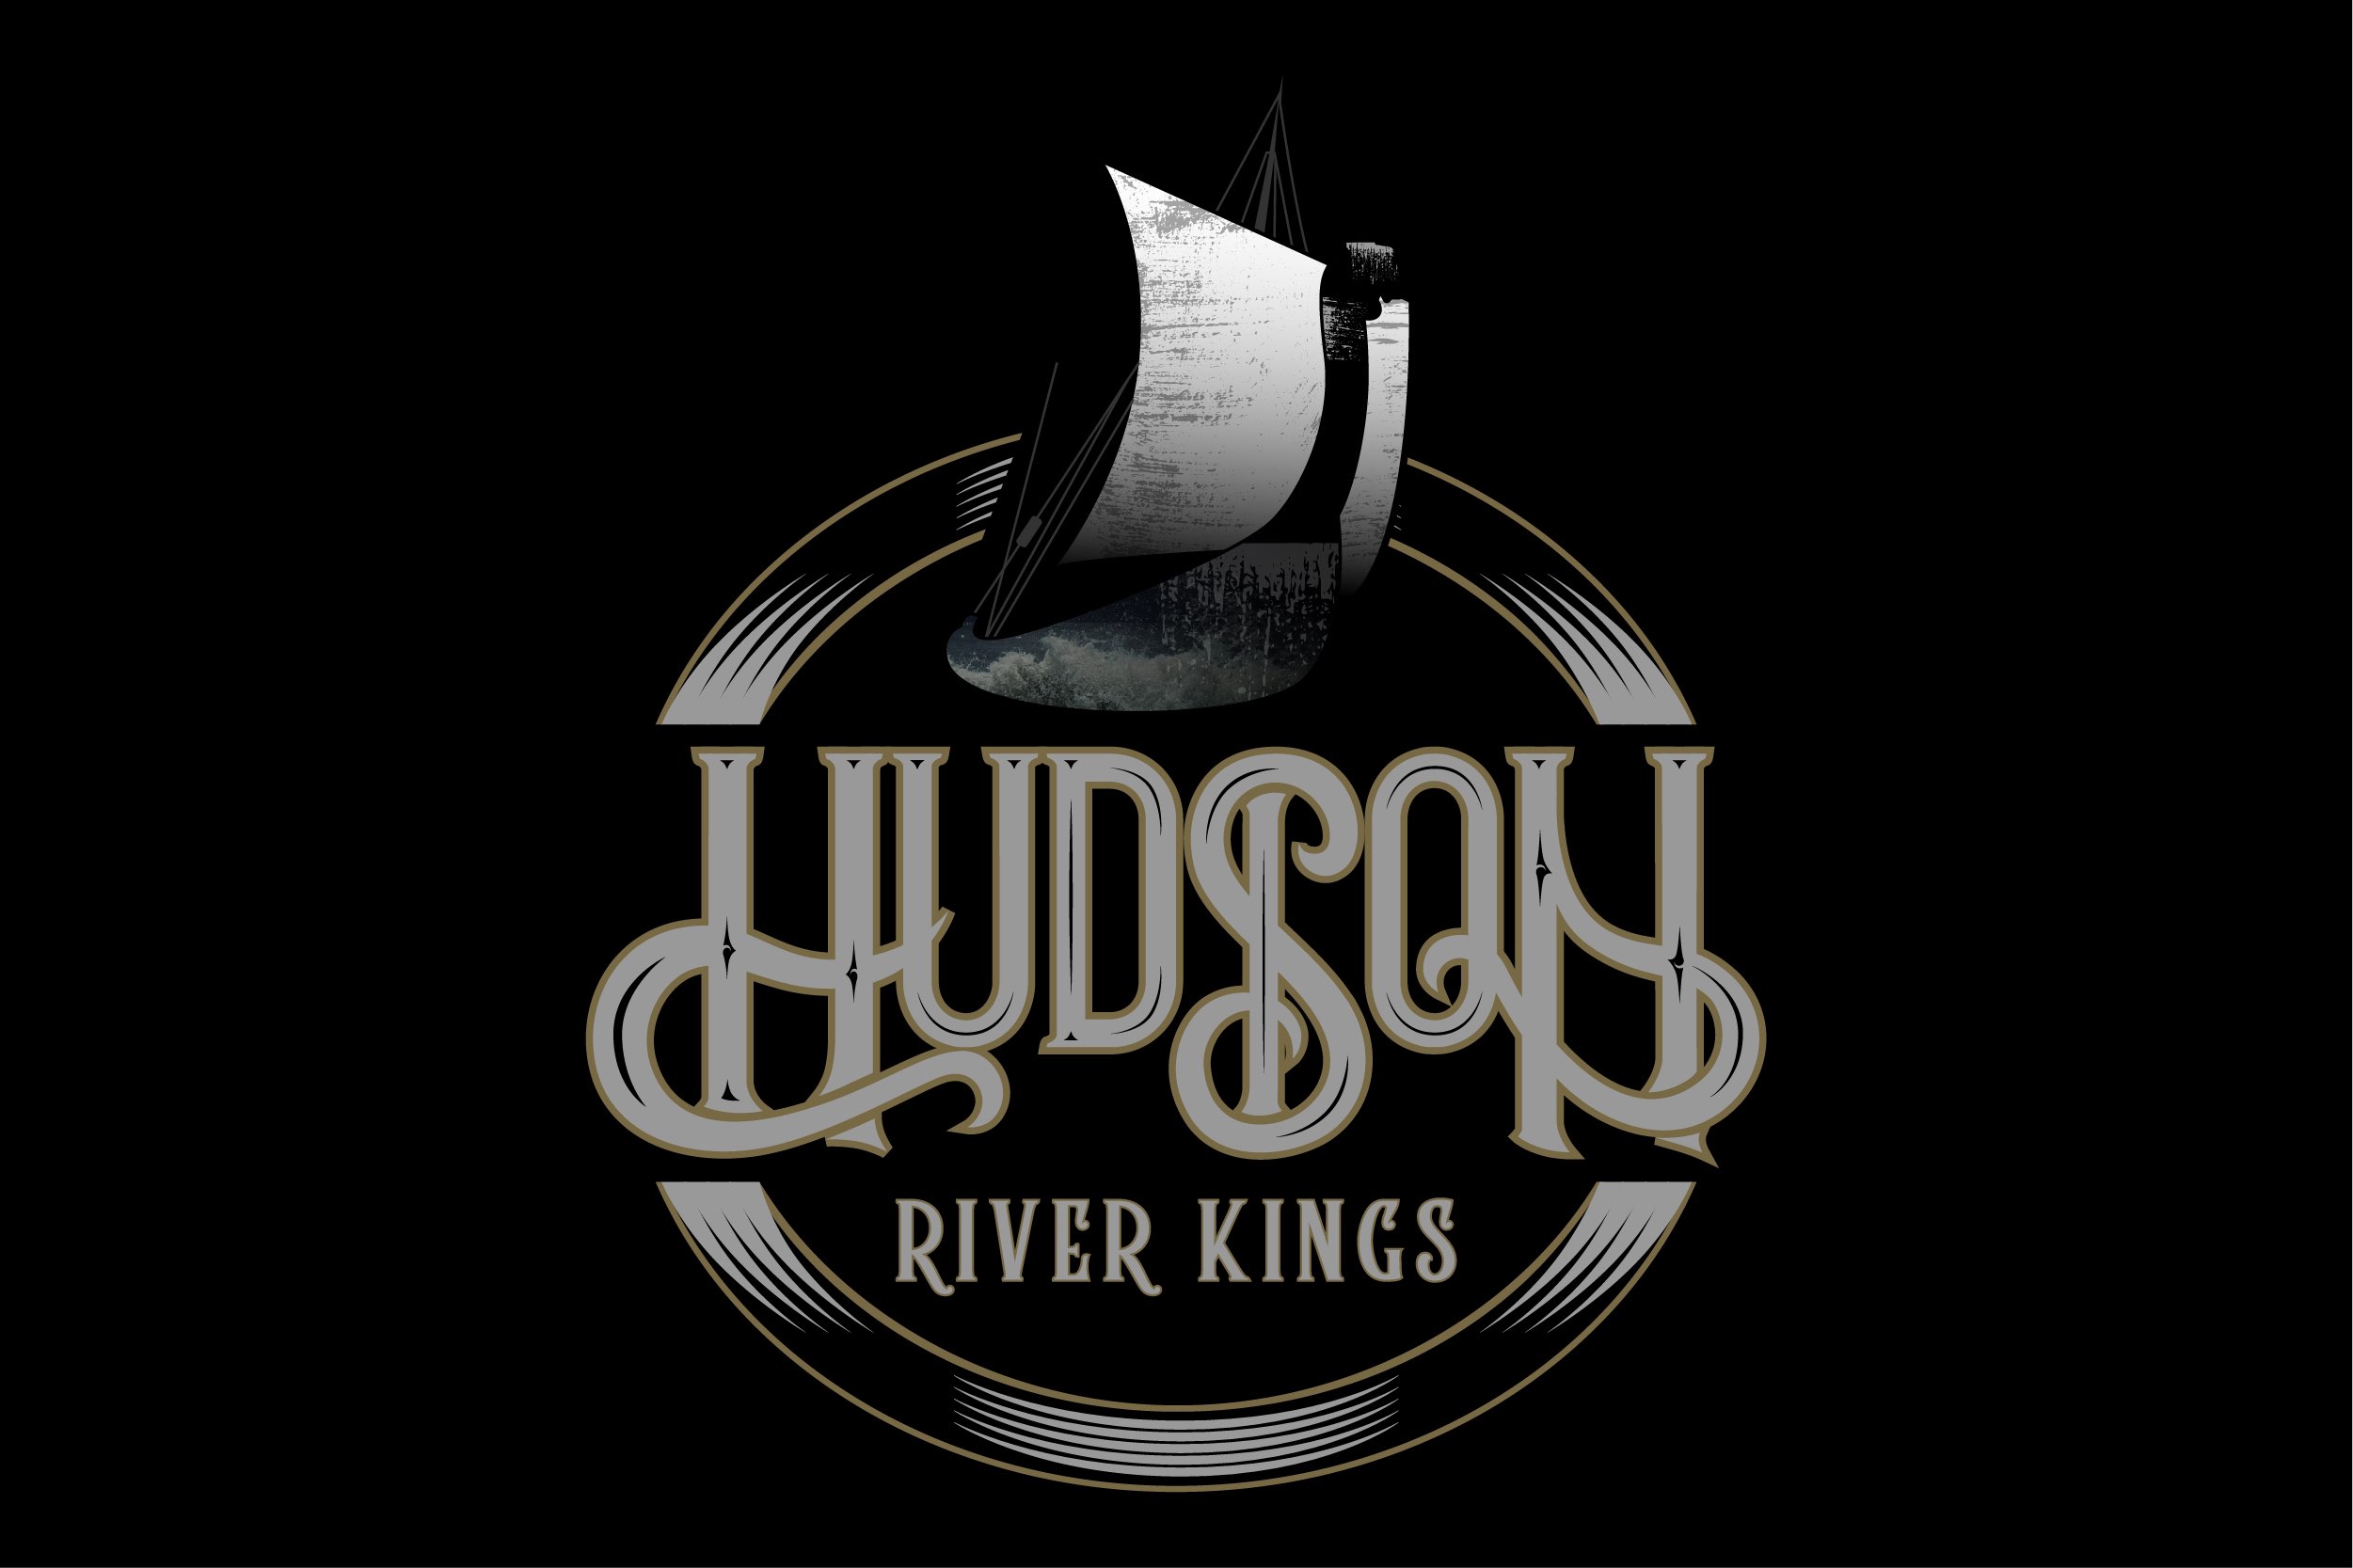 Hudson River Kings